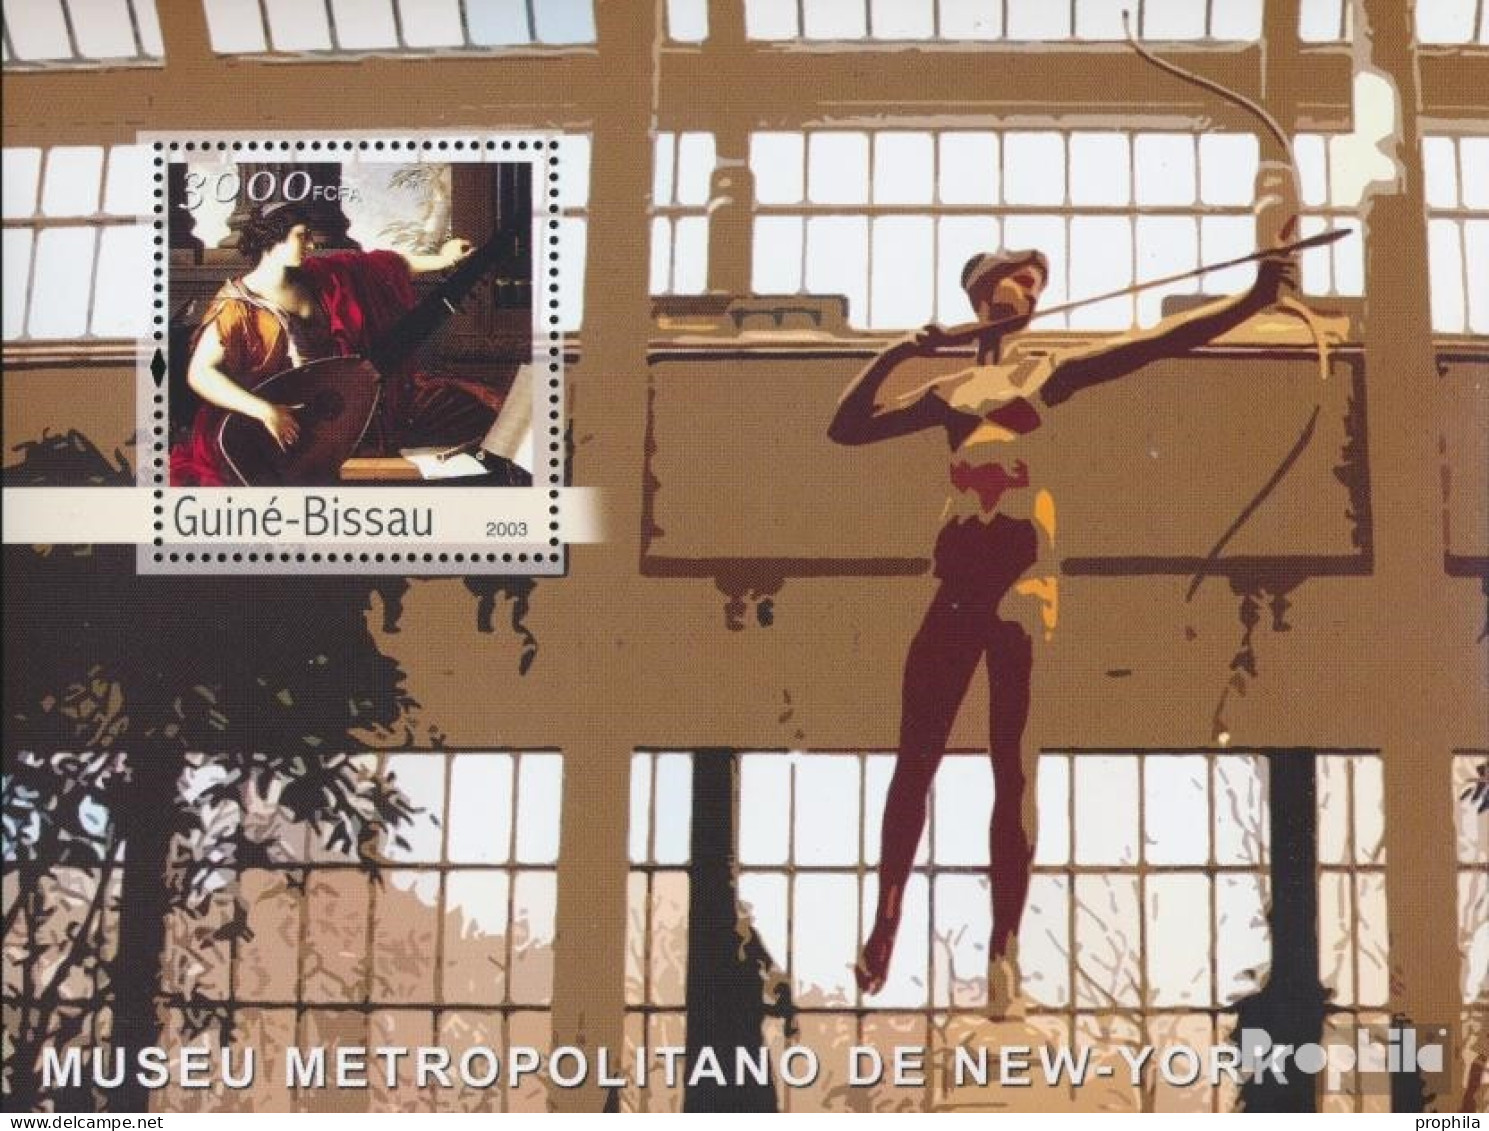 Guinea-Bissau Block 411 (kompl. Ausgabe) Postfrisch 2003 Metropolitan Museum New York - Guinea-Bissau